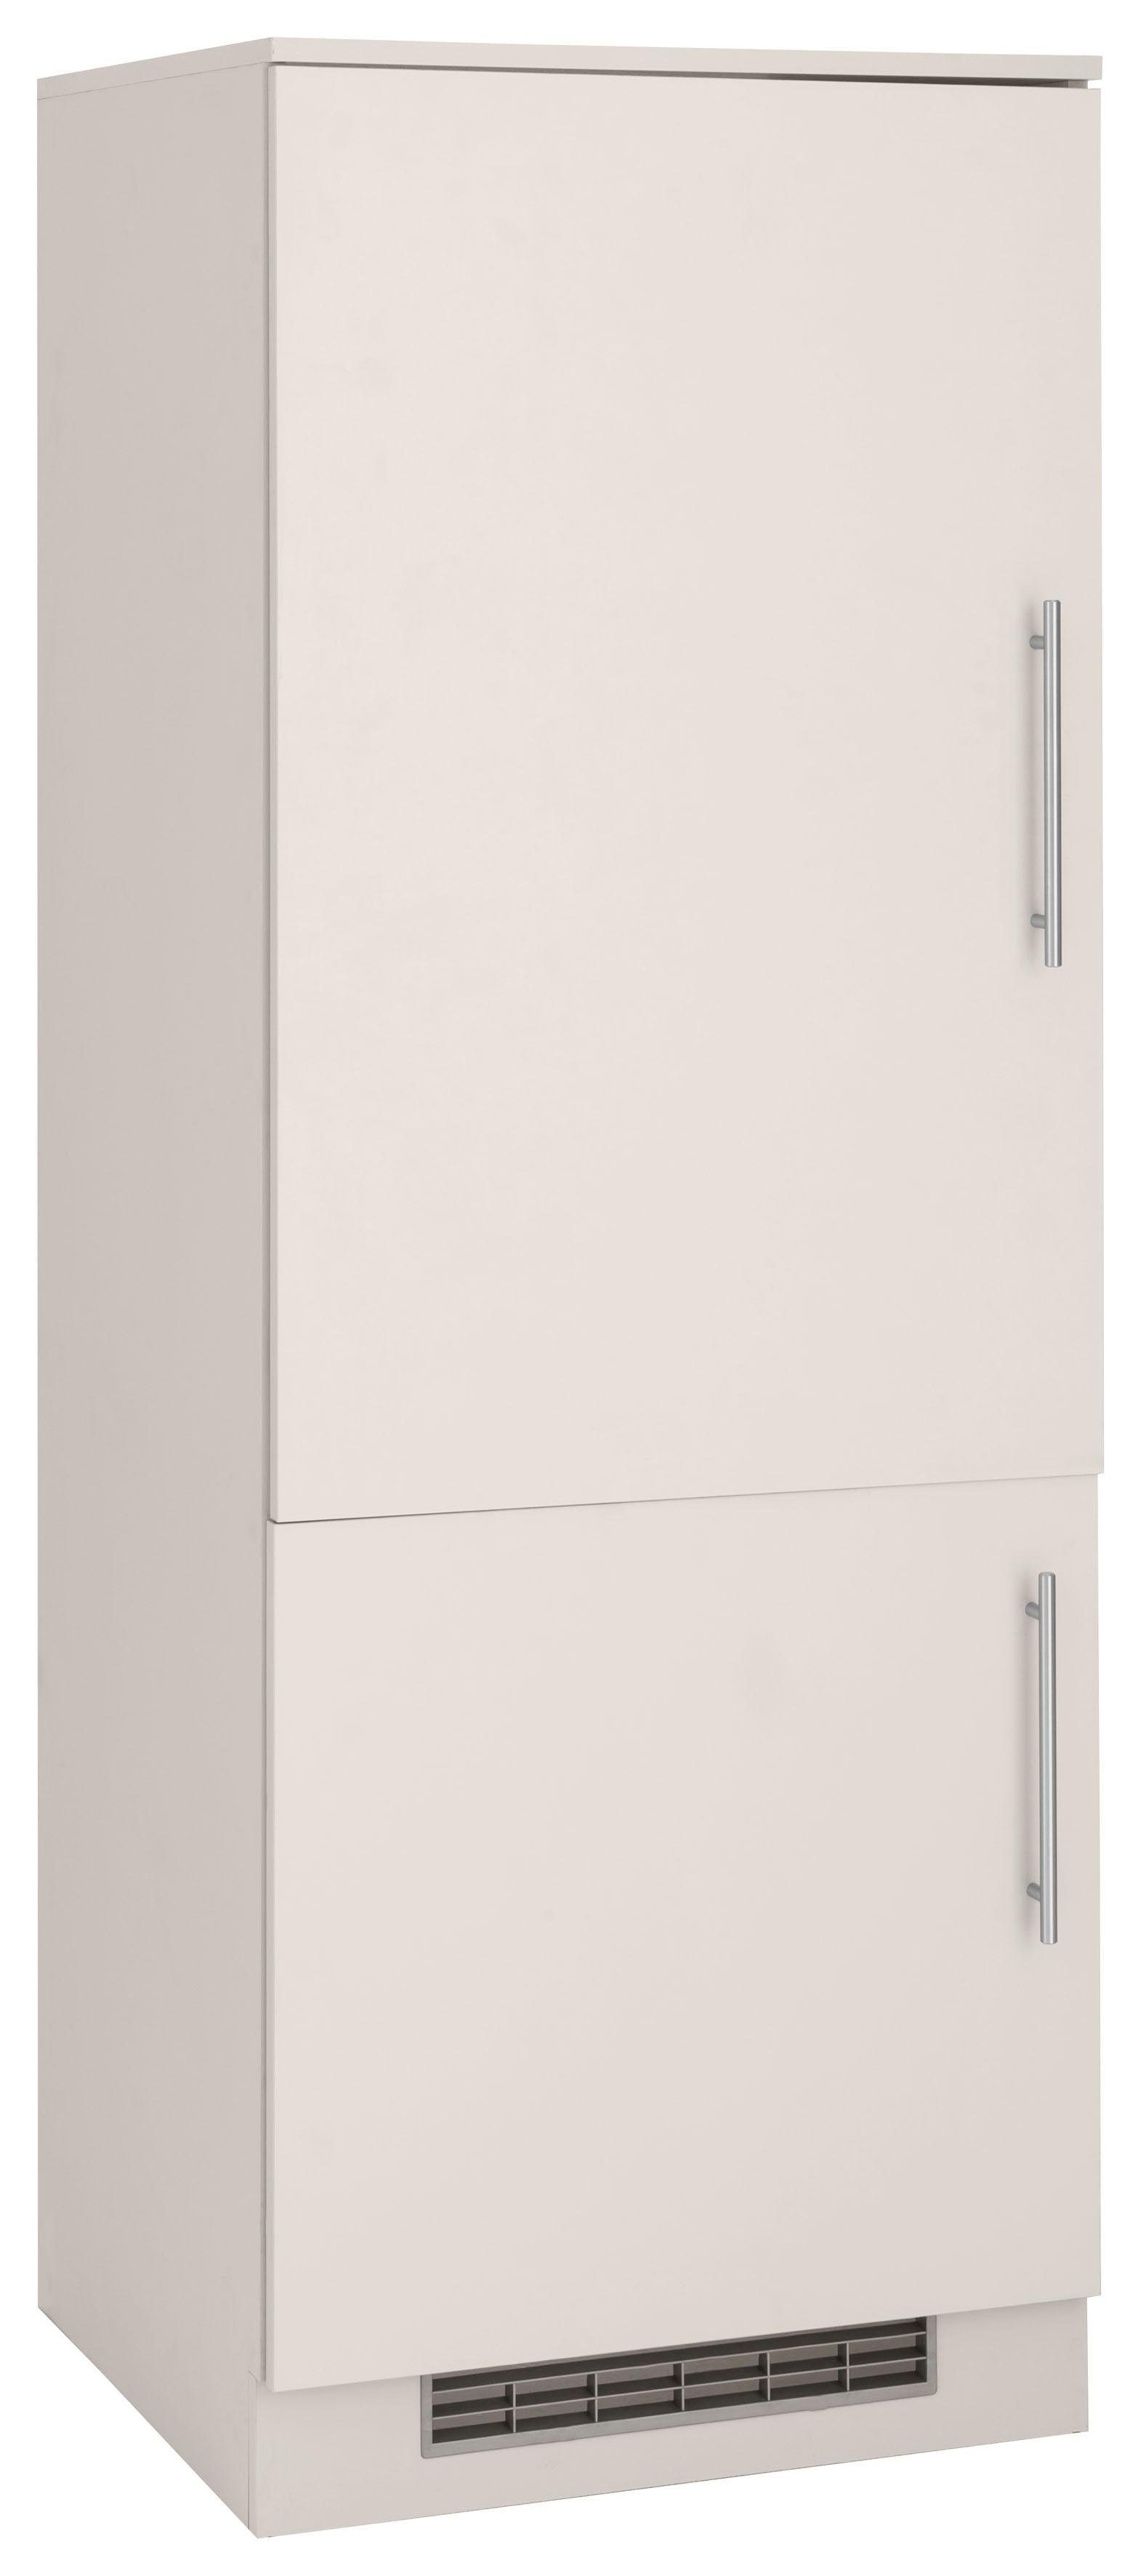 wiho Küchen Kühlumbauschrank Cali 60 cm breit Front und Korpus: Cashmere | Cashmere